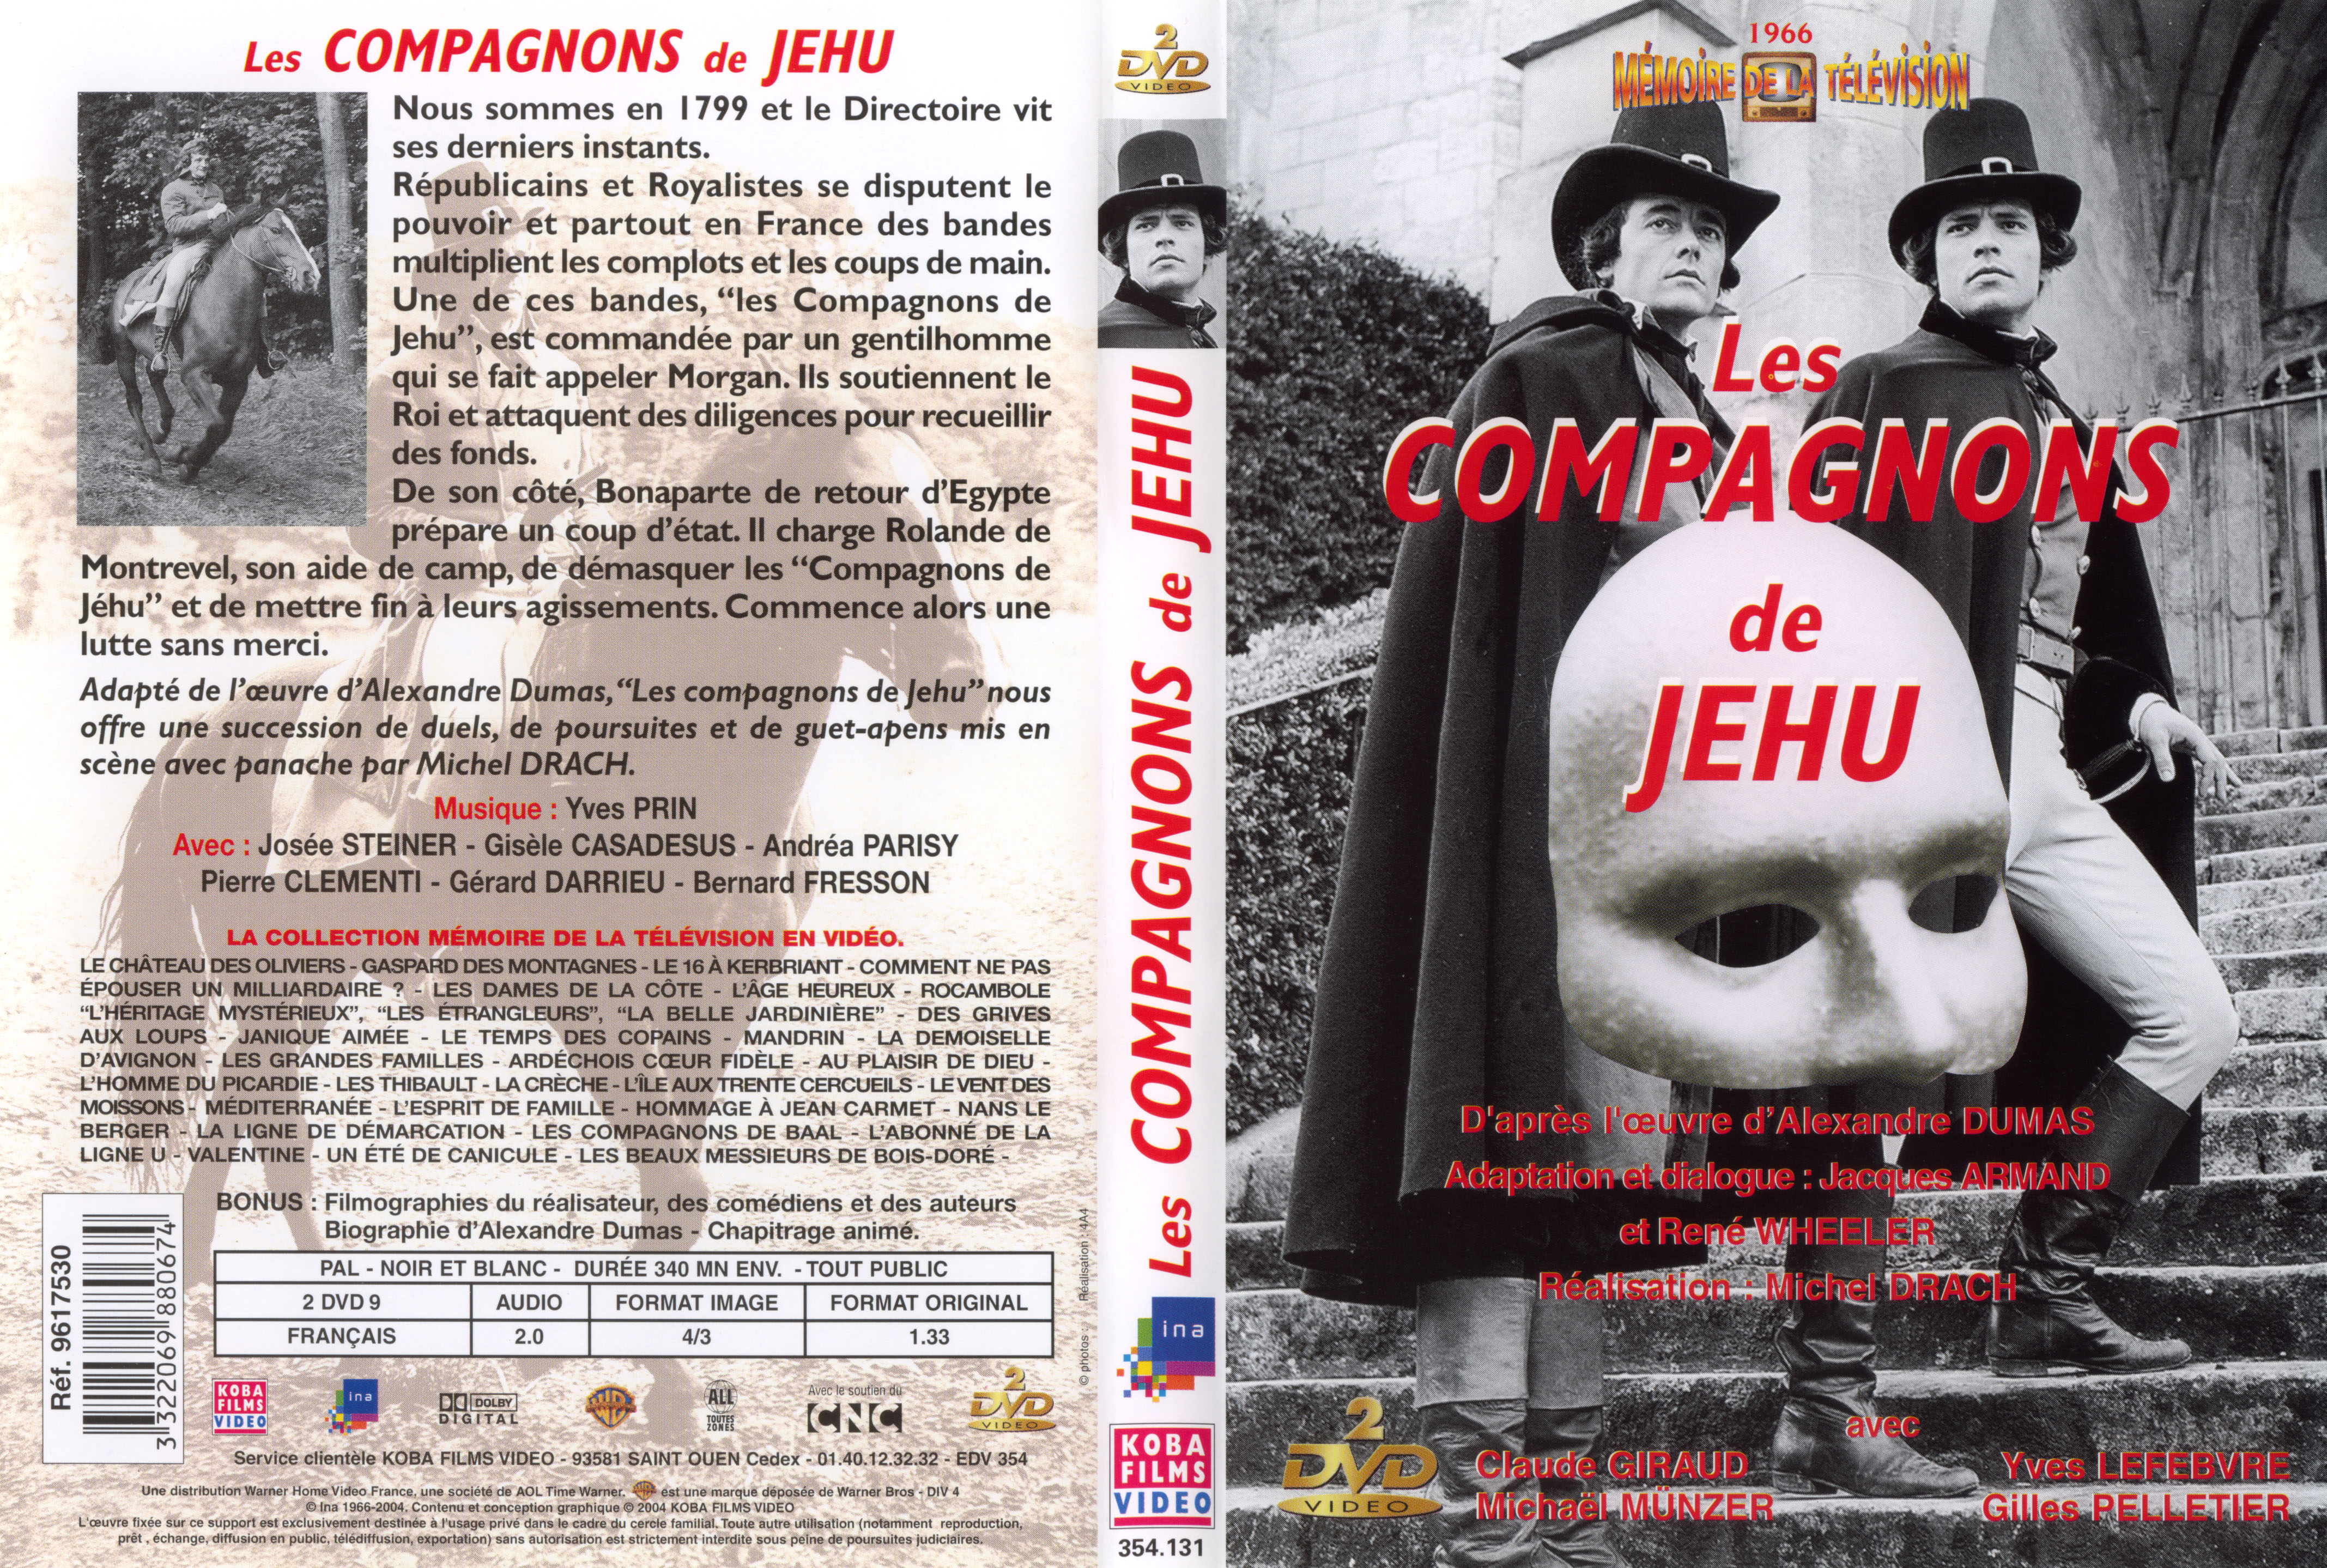 Jaquette DVD Les compagnons de Jhu